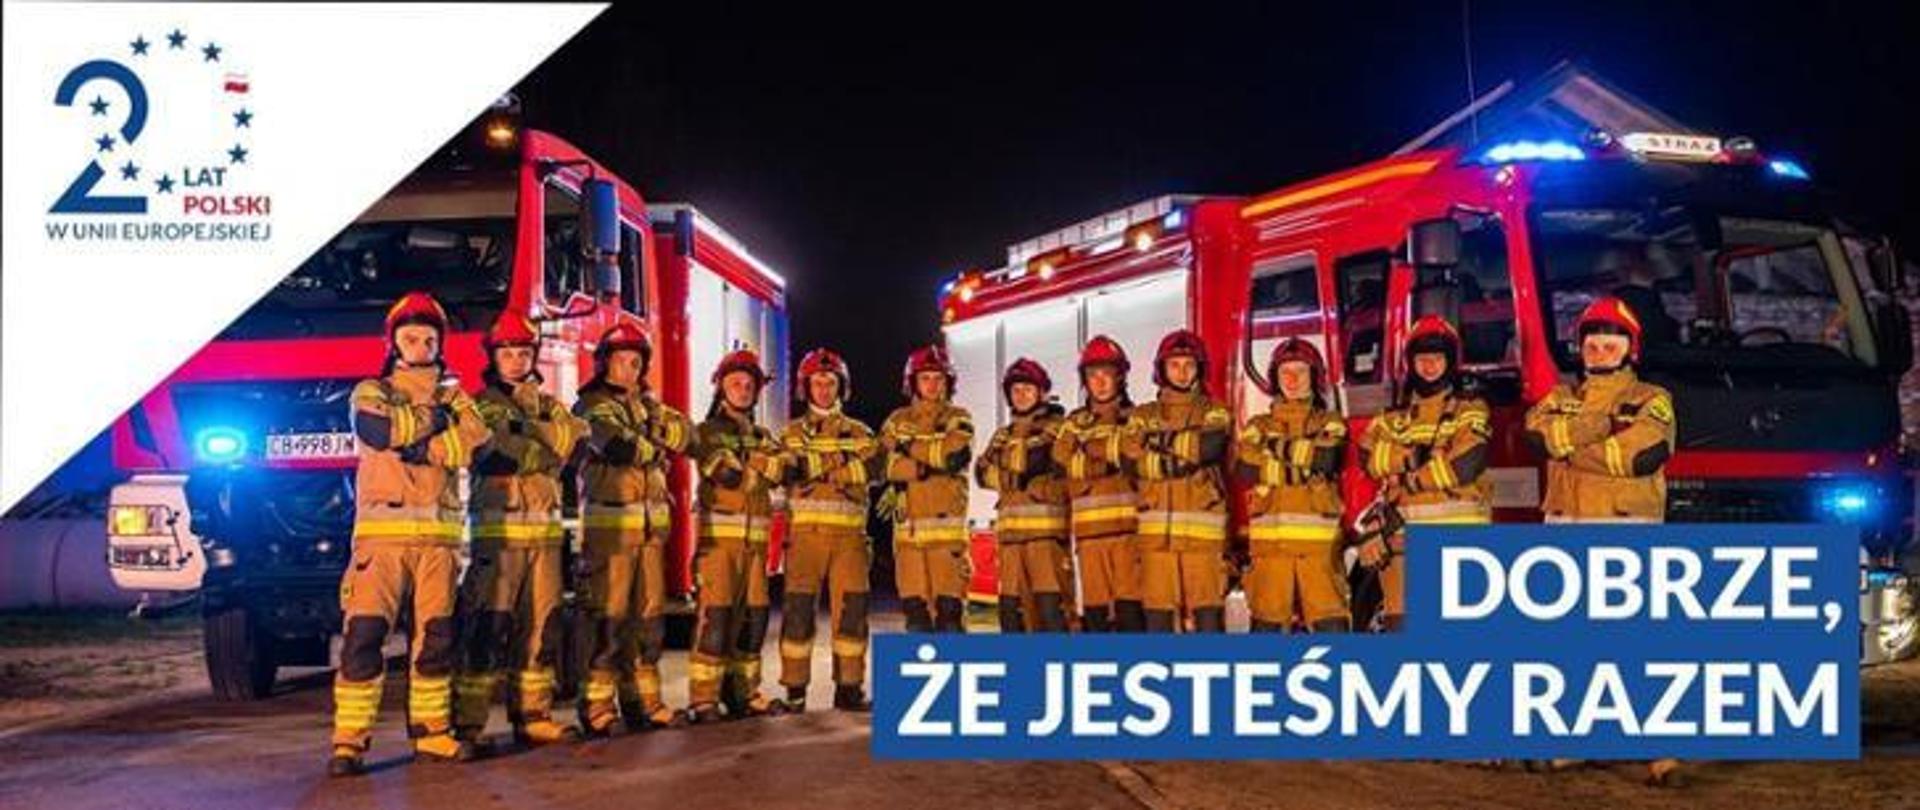 Plakat promujący wydarzenie 20 lecia obecności Polski w unii europejskiej. Na zdjęciu widać dwa pojazdy pożarnicze. Pojazdy w kolorze czerwonym ze srebrnymi oraz białymi elementami zabudowy. Pojazdy zapalone mają na dachu oraz z przodu na masce niebieskie światła alarmowe. Przed pojazdami w jednym szeregu ustawionych jest dwunastu strażaków. Strażacy ubrani w ubrania specjalne w kolorze żółtym paskowym. Na głowach założone mają hełmy w kolorze czerwonym. W prawym dolnym rogu na niebieskim tle widnieje biały napis dobrze że jesteśmy razem. 